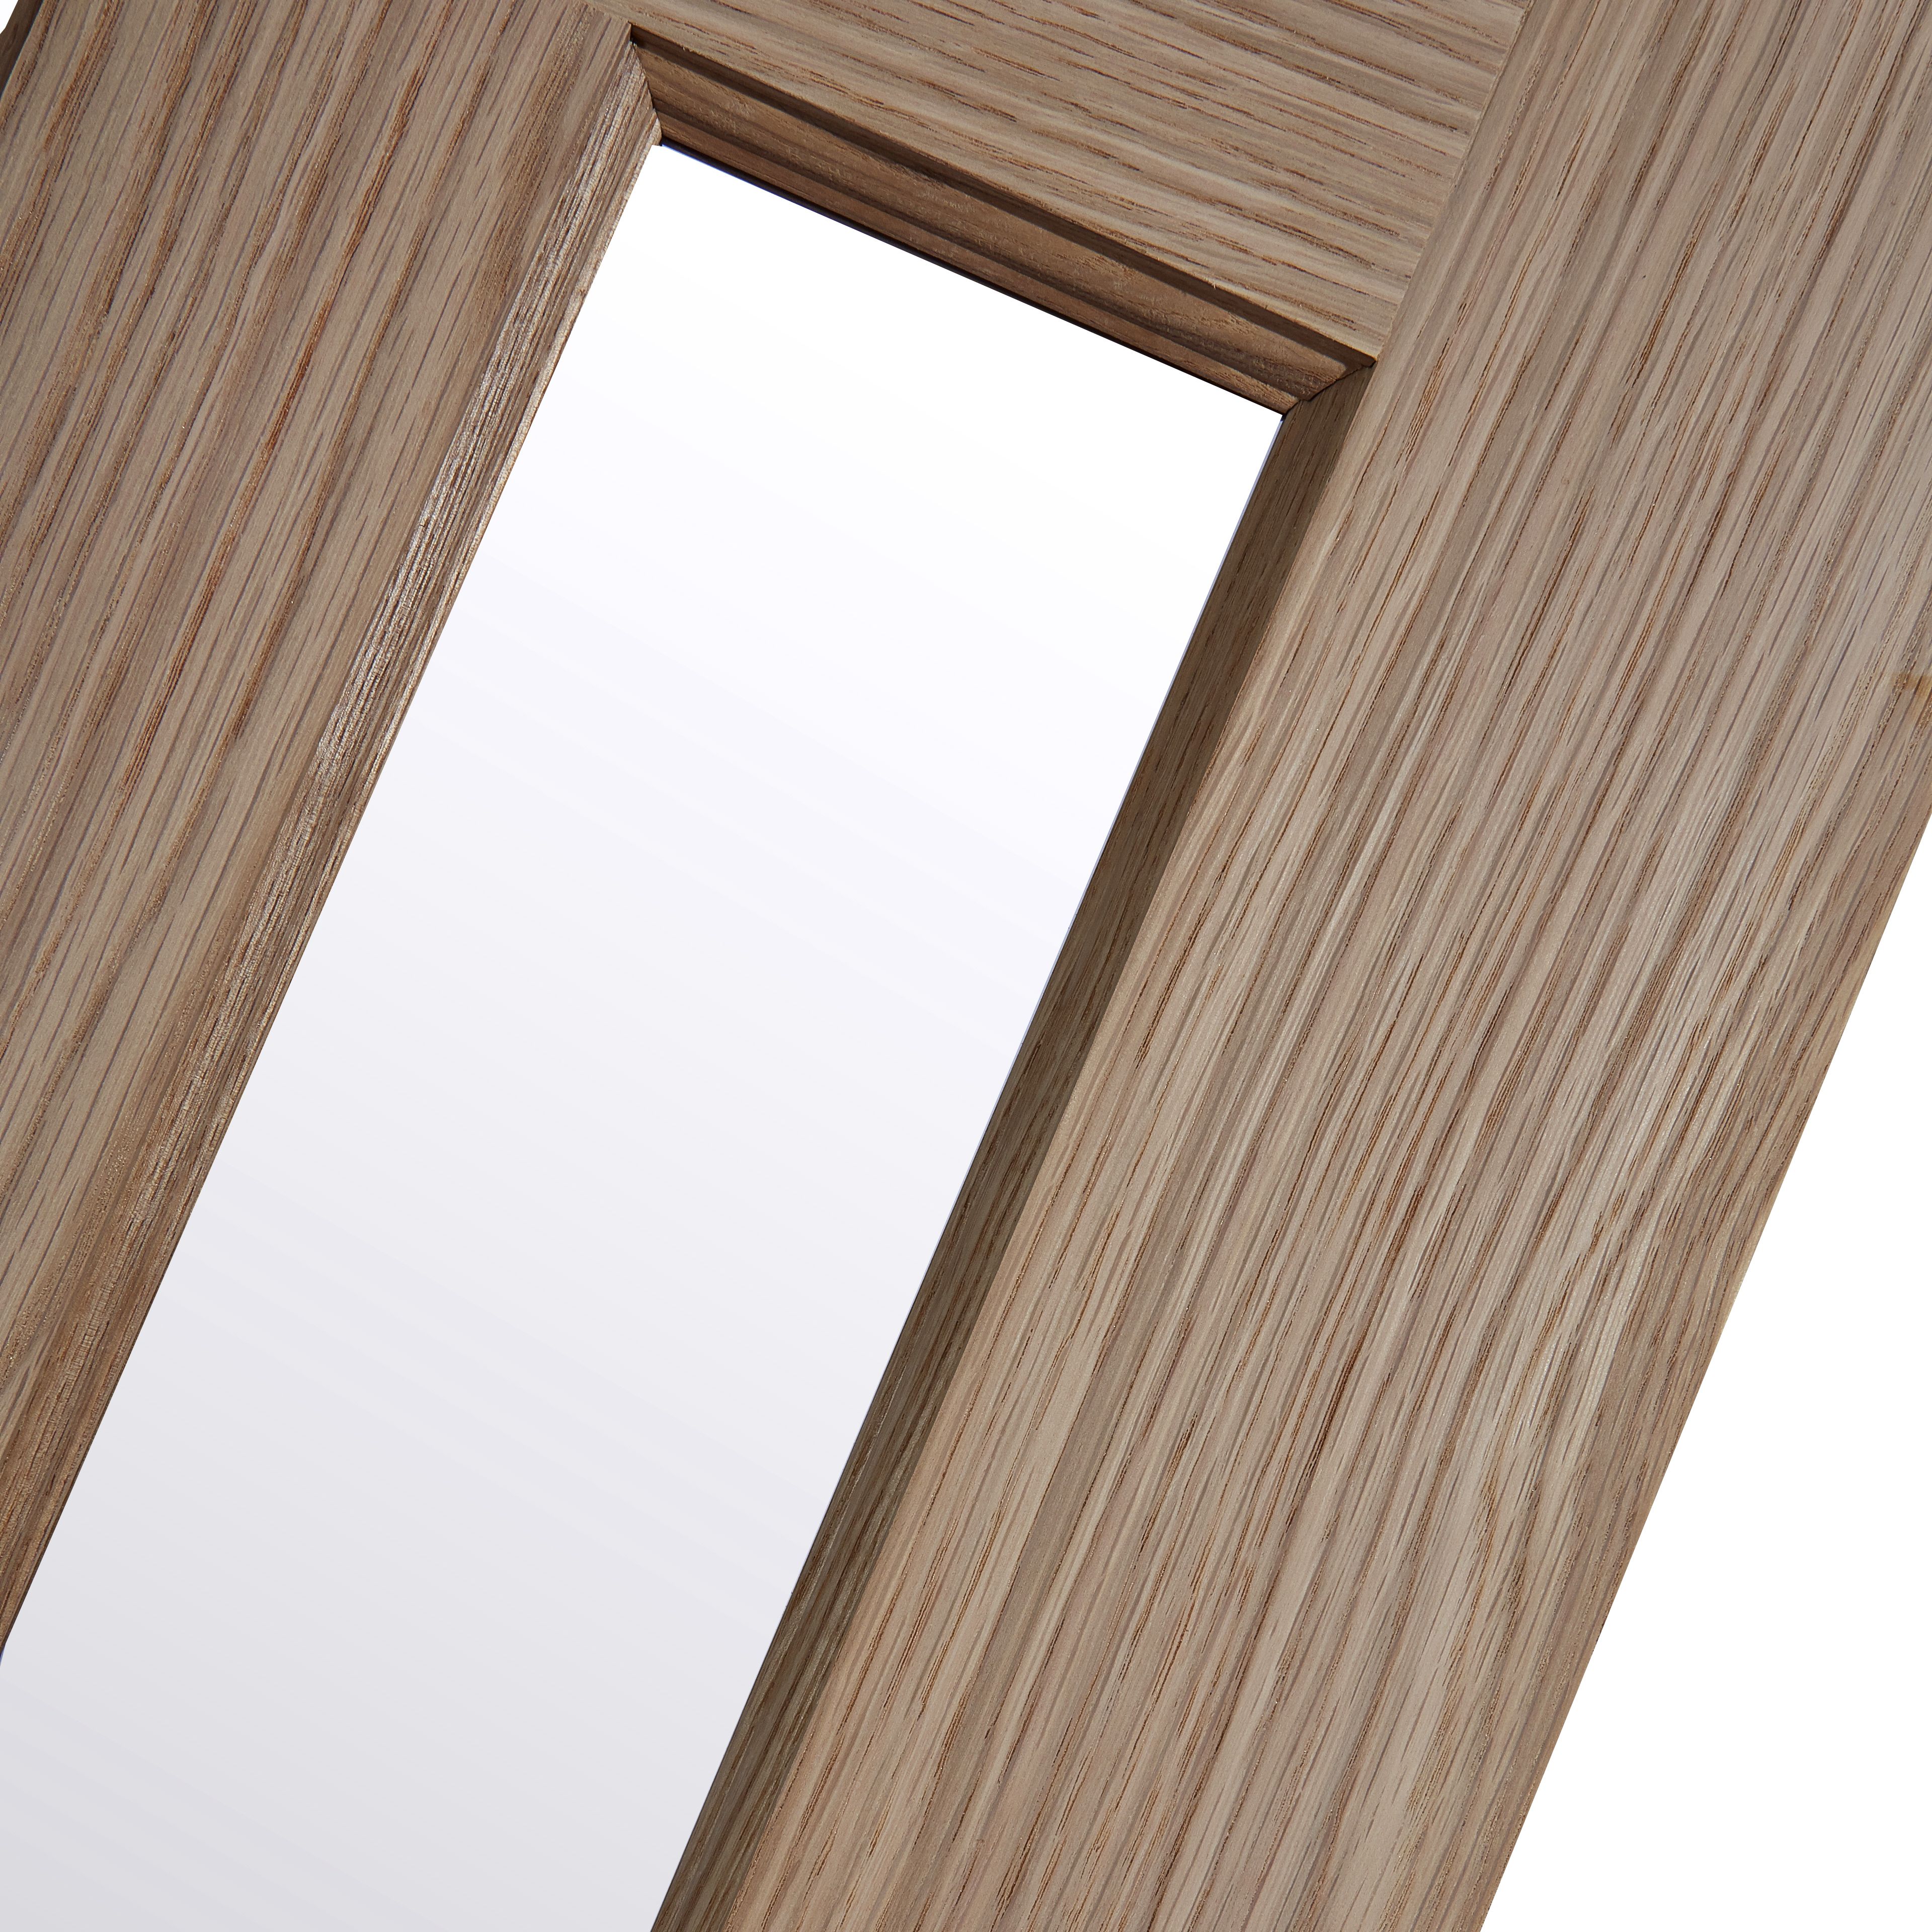 Vertical, 3 Lite 3 panel Obscure Glazed Contemporary White oak veneer Internal Door, (H)1981mm (W)686mm (T)35mm